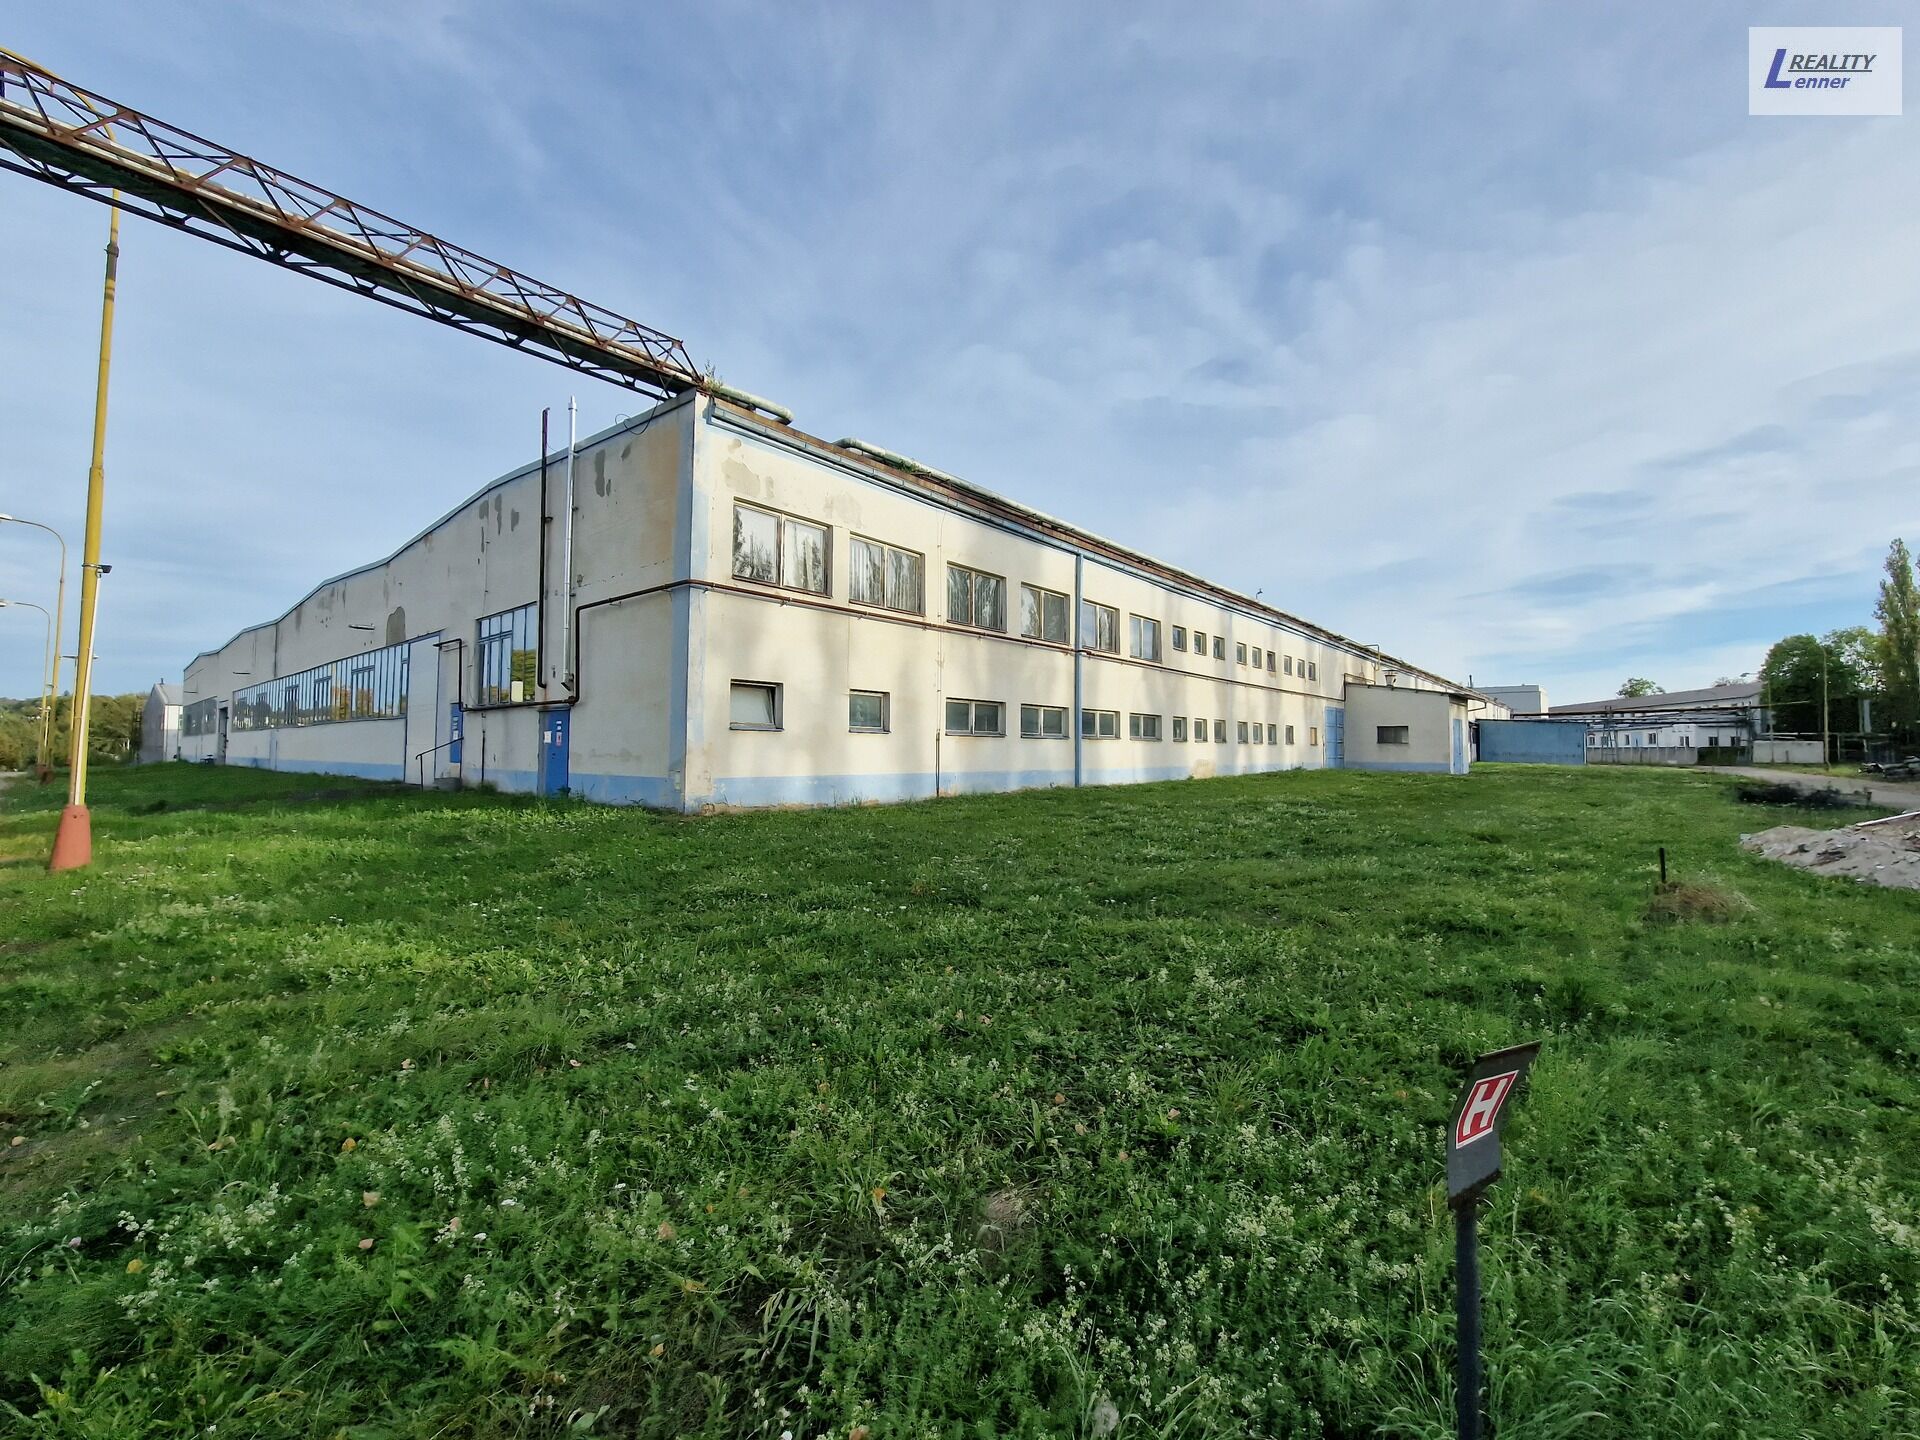 Komerční prostor, výrobní hala 900 m2, v průmyslovém areálu, ulice Obecnická